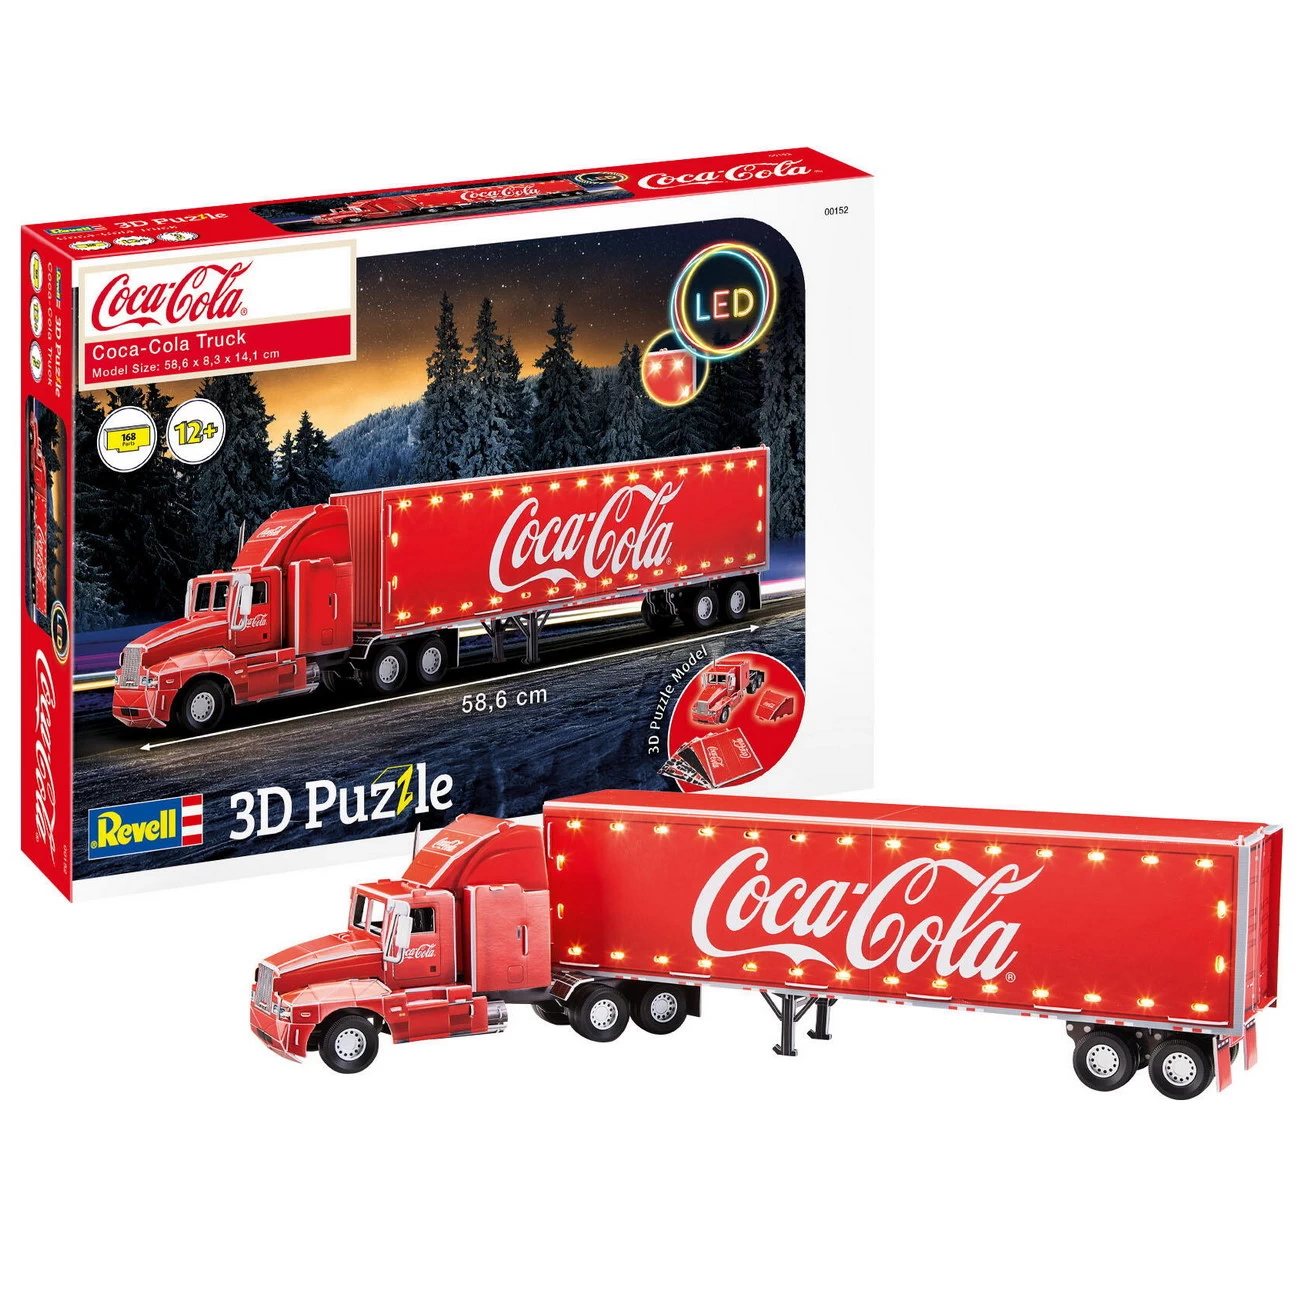 LED Edition - Coca Cola Truck (00152)